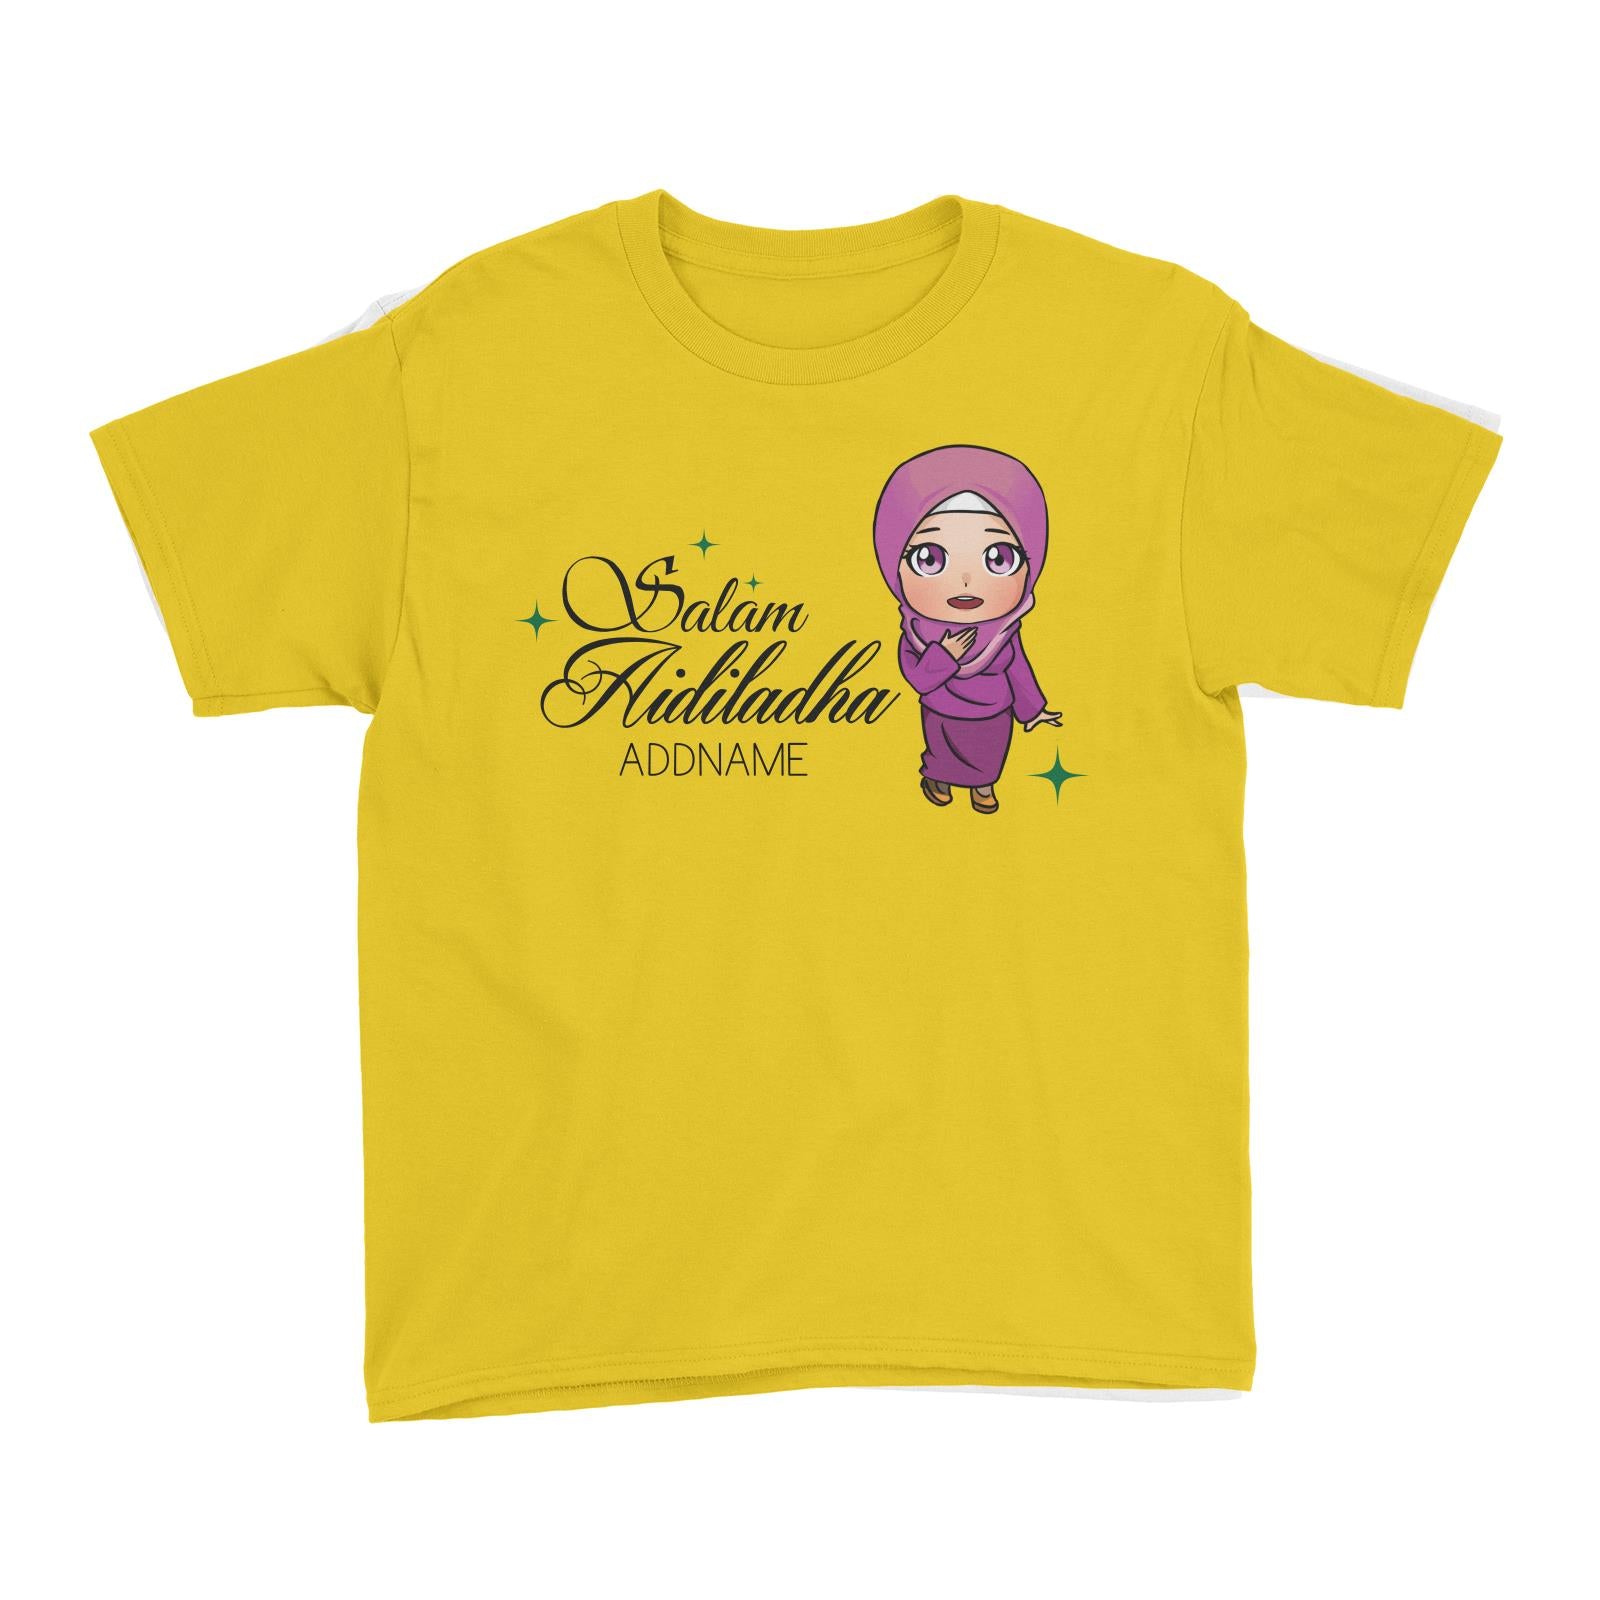 Raya Chibi Wishes Woman Addname Wishes Salam Aidiladha Addname Kid's T-Shirt